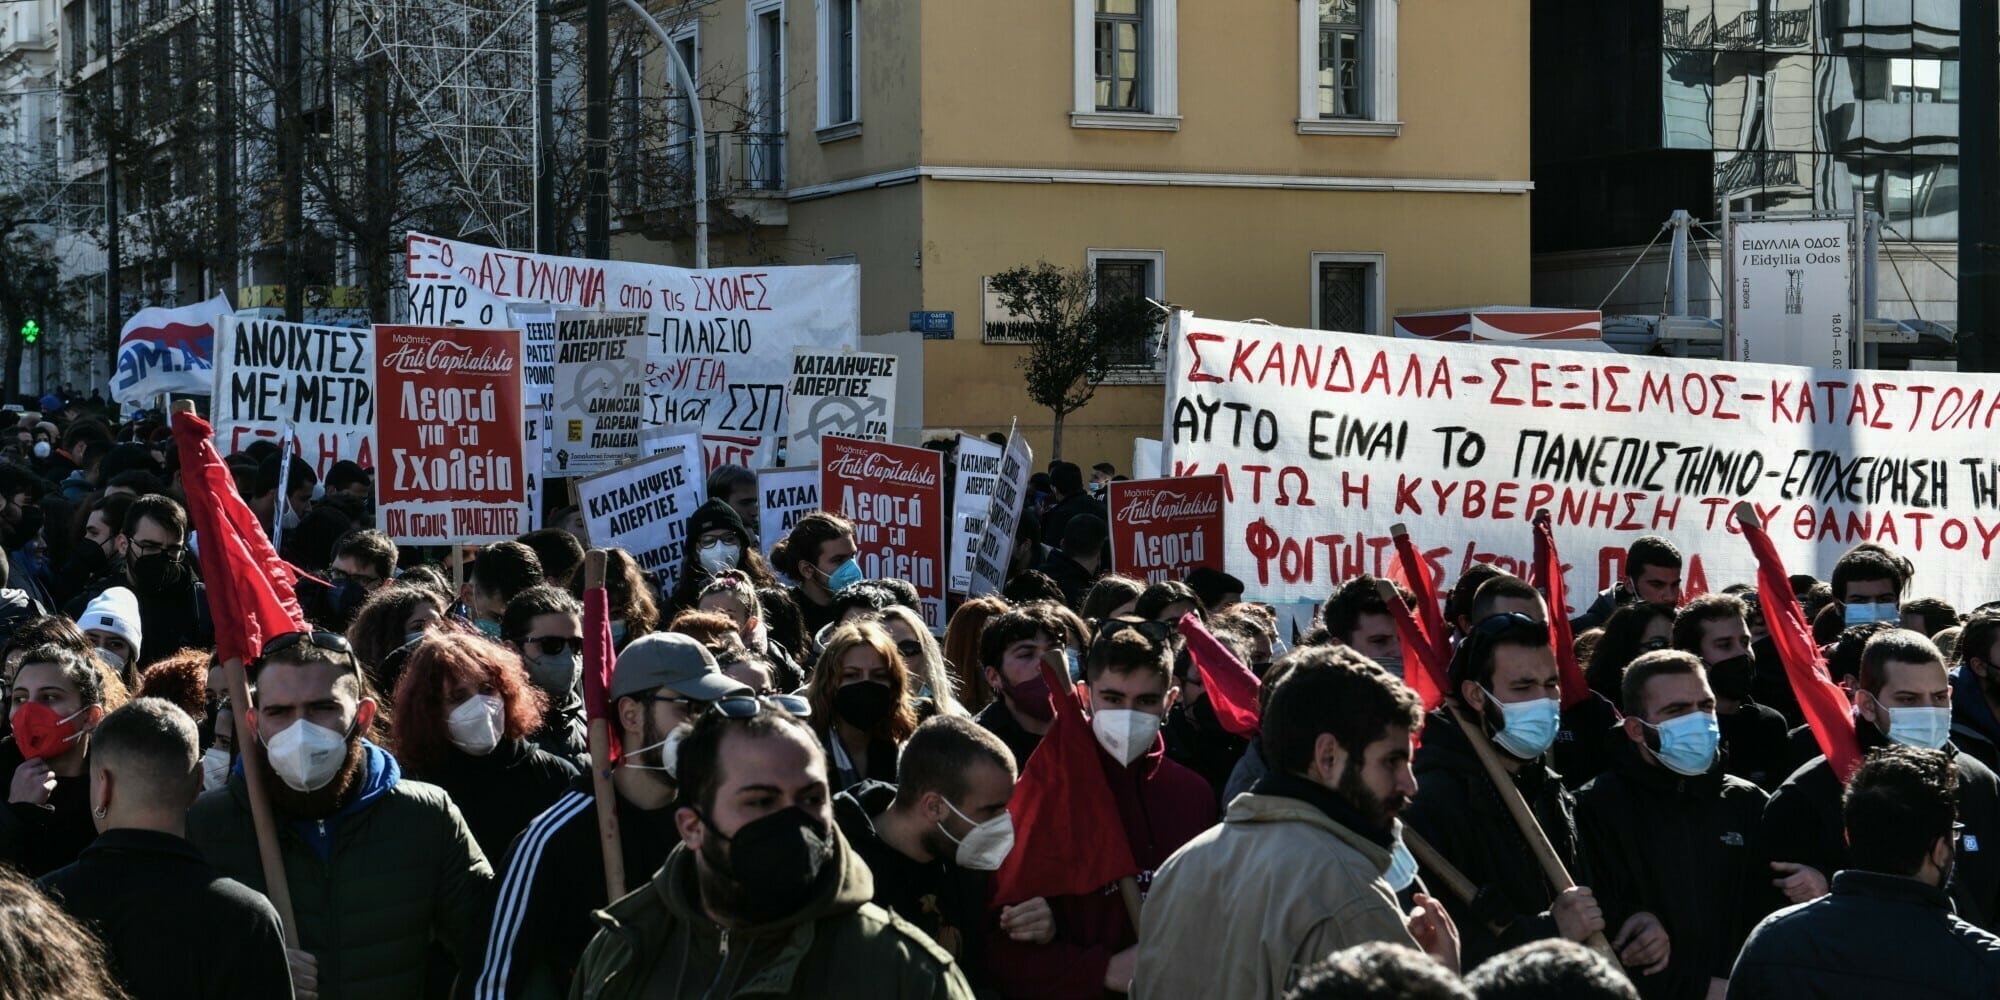 Πανεκπαιδευτικό συλλαλητήριο στην Αθήνα